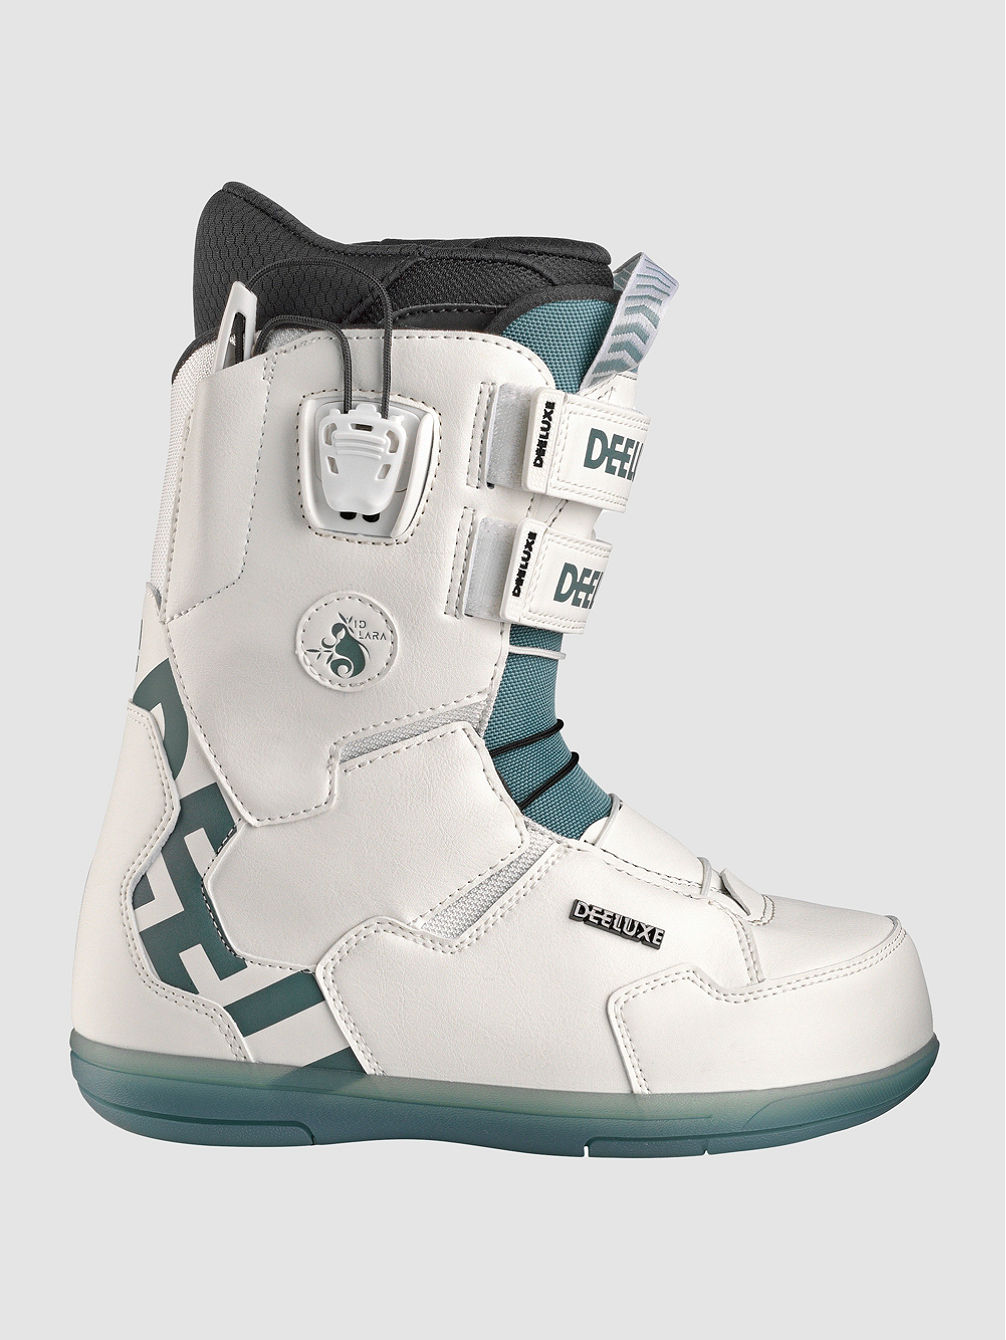 Team ID Ltd. Lara 2023 Snowboard Boots